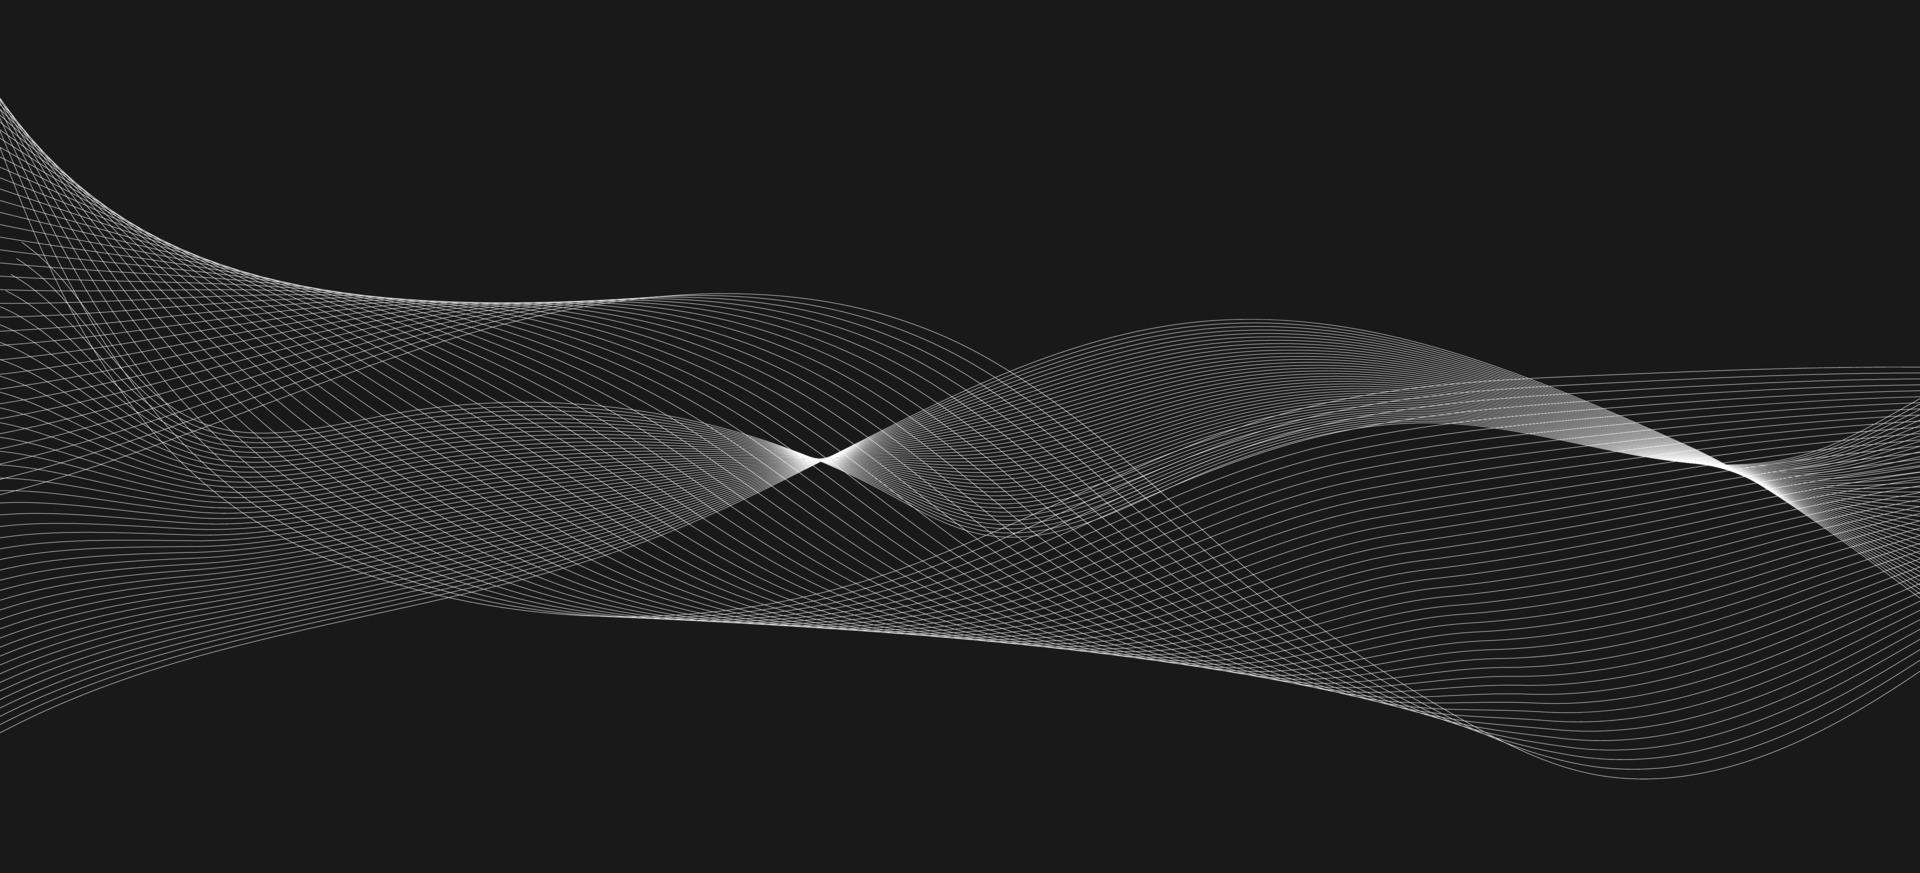 weiße Schallwelle auf dunkelgrauem Hintergrund. Audio-Line-Mischelement. abstrakte wellenform mit kontur vektor